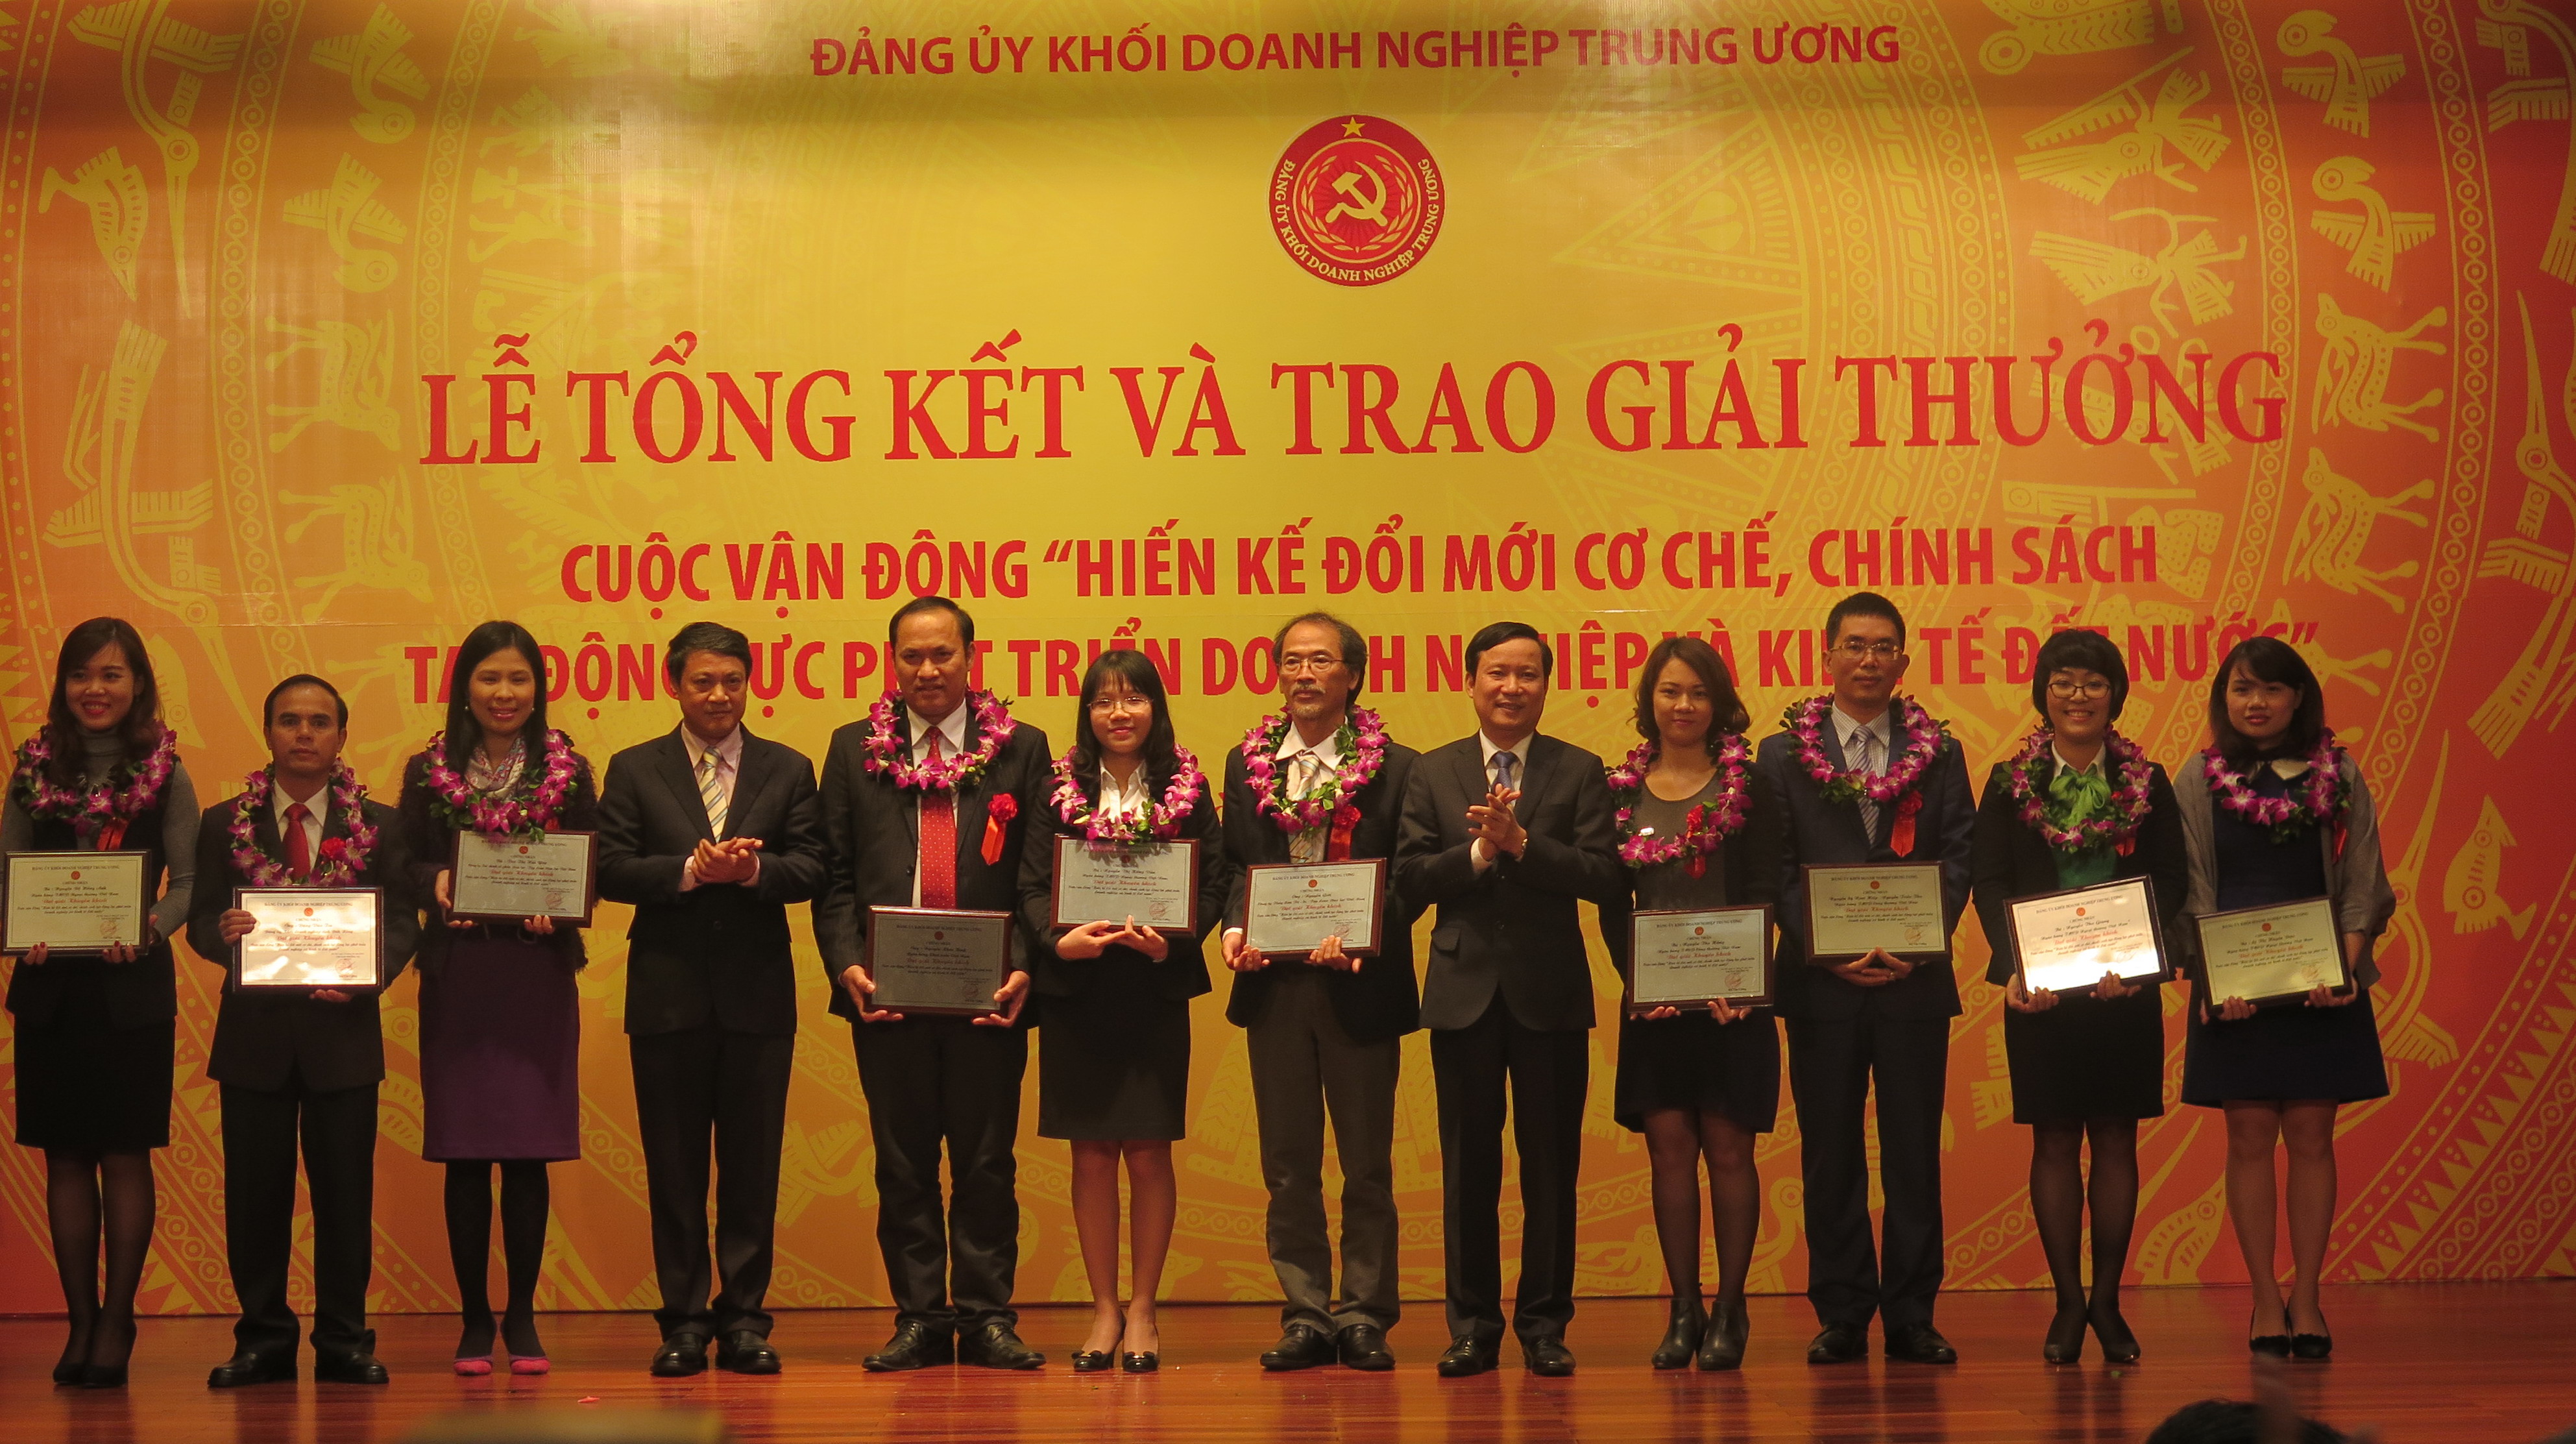 Lãnh đạo Đảng ủy Khối Doanh nghiệp Trung ương trao giải Khuyến Khích cho các tác giả